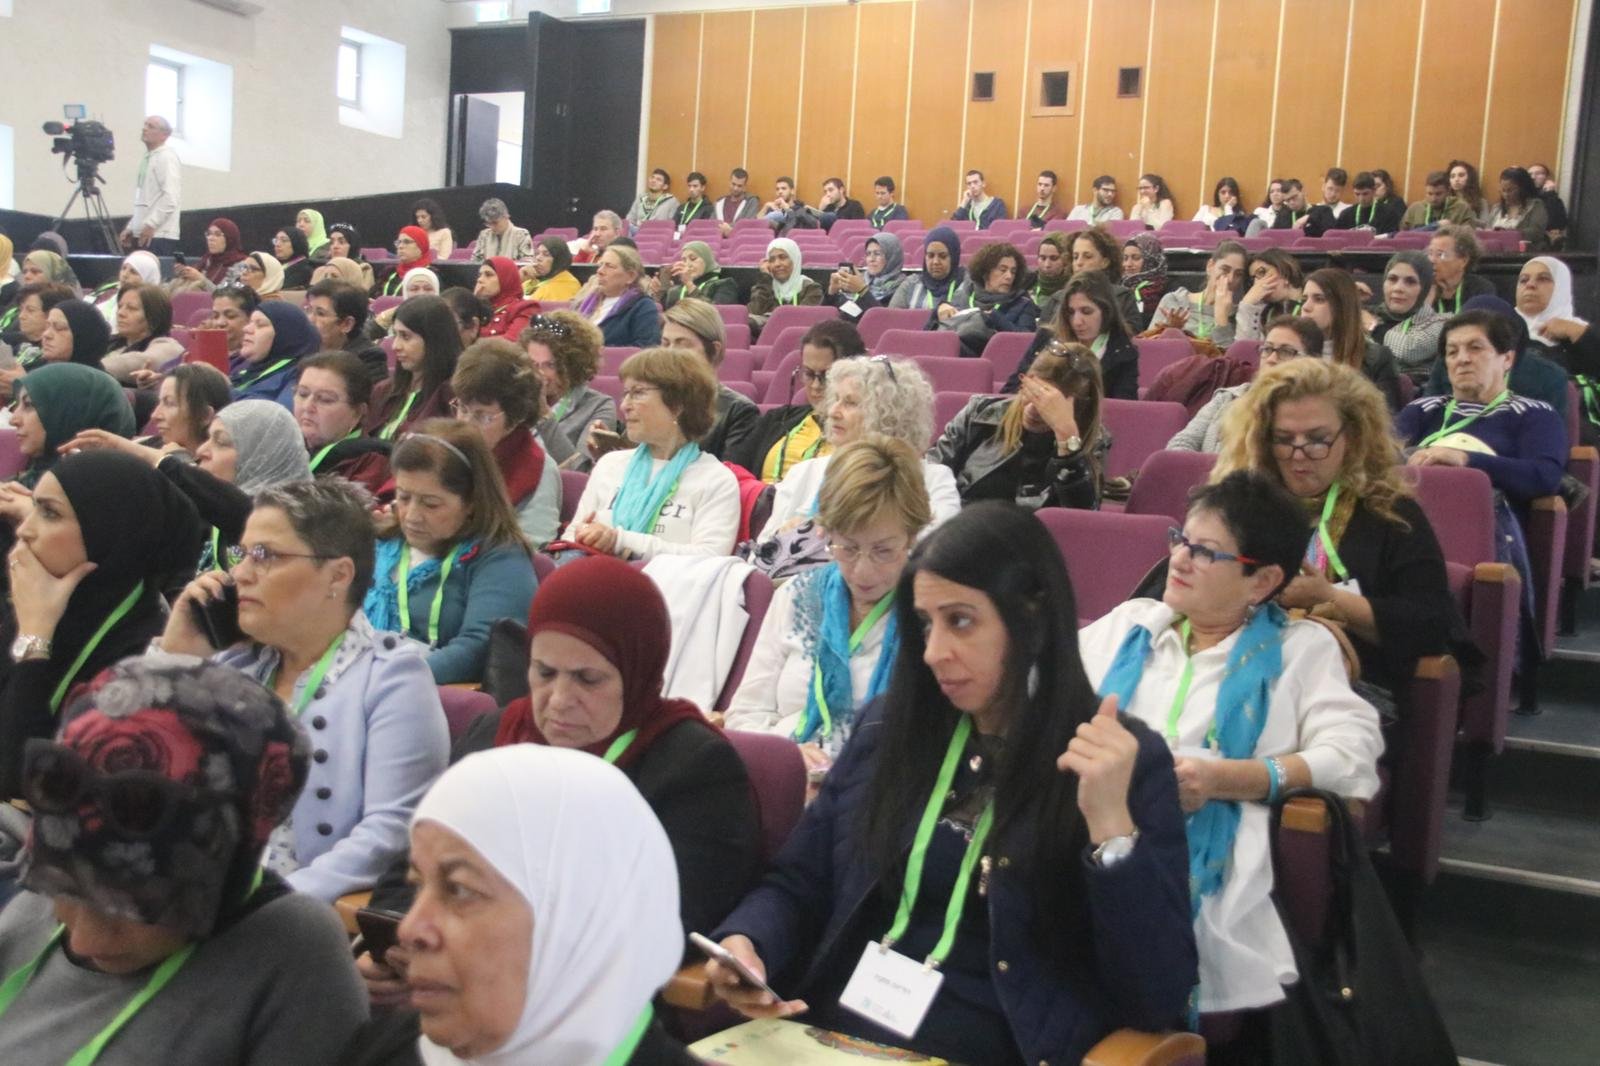 حضور واسع في مؤتمر "نساء يصنعن التغيير" في جفعات حبيبة -3